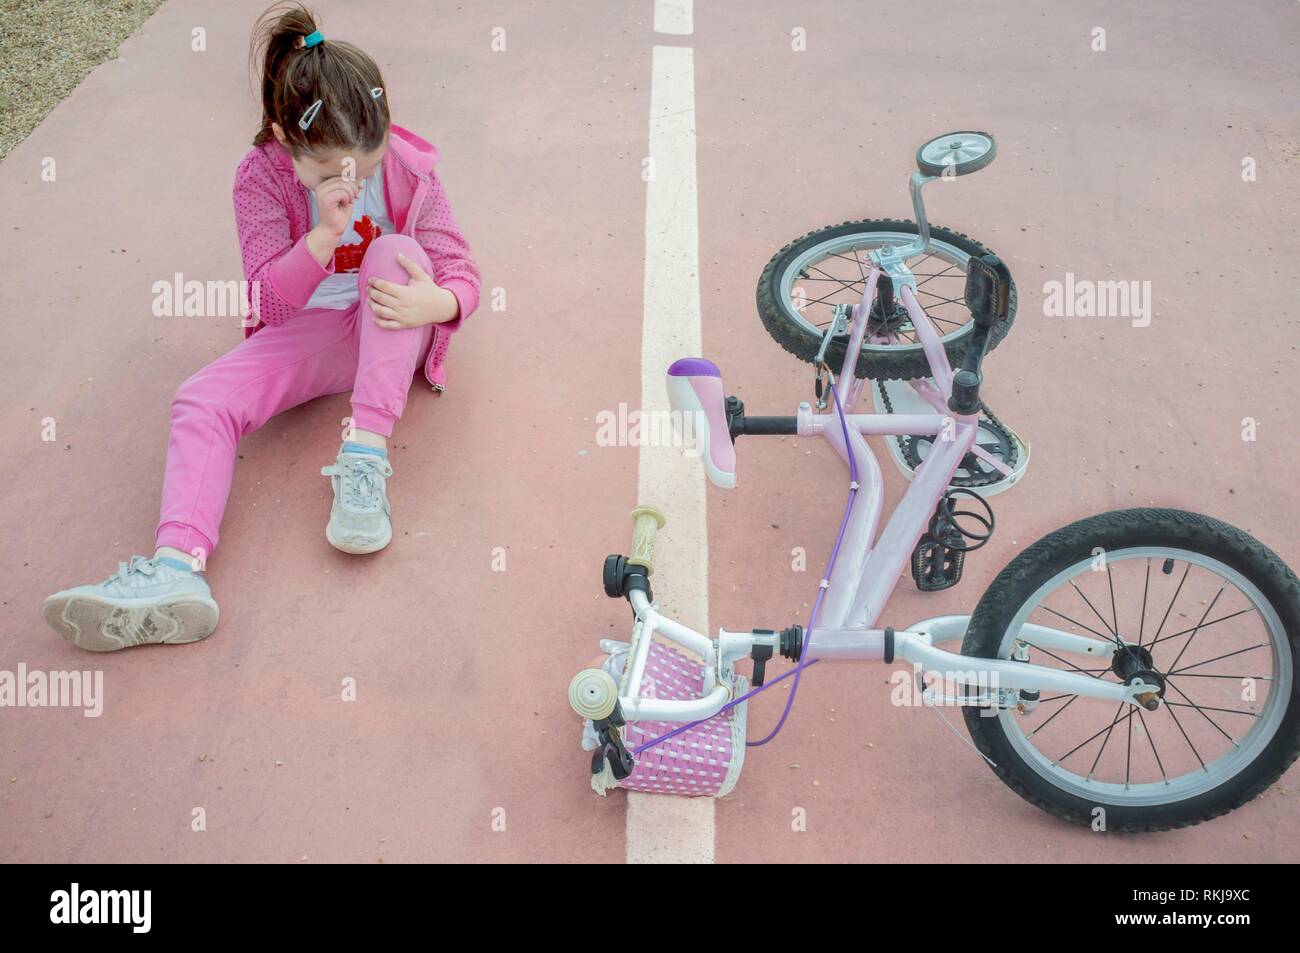 Niño Niña llorando después del accidente de bicicleta. Hembra de color rosa en el piso en bicicleta con ruedas de entrenamiento. Foto de stock